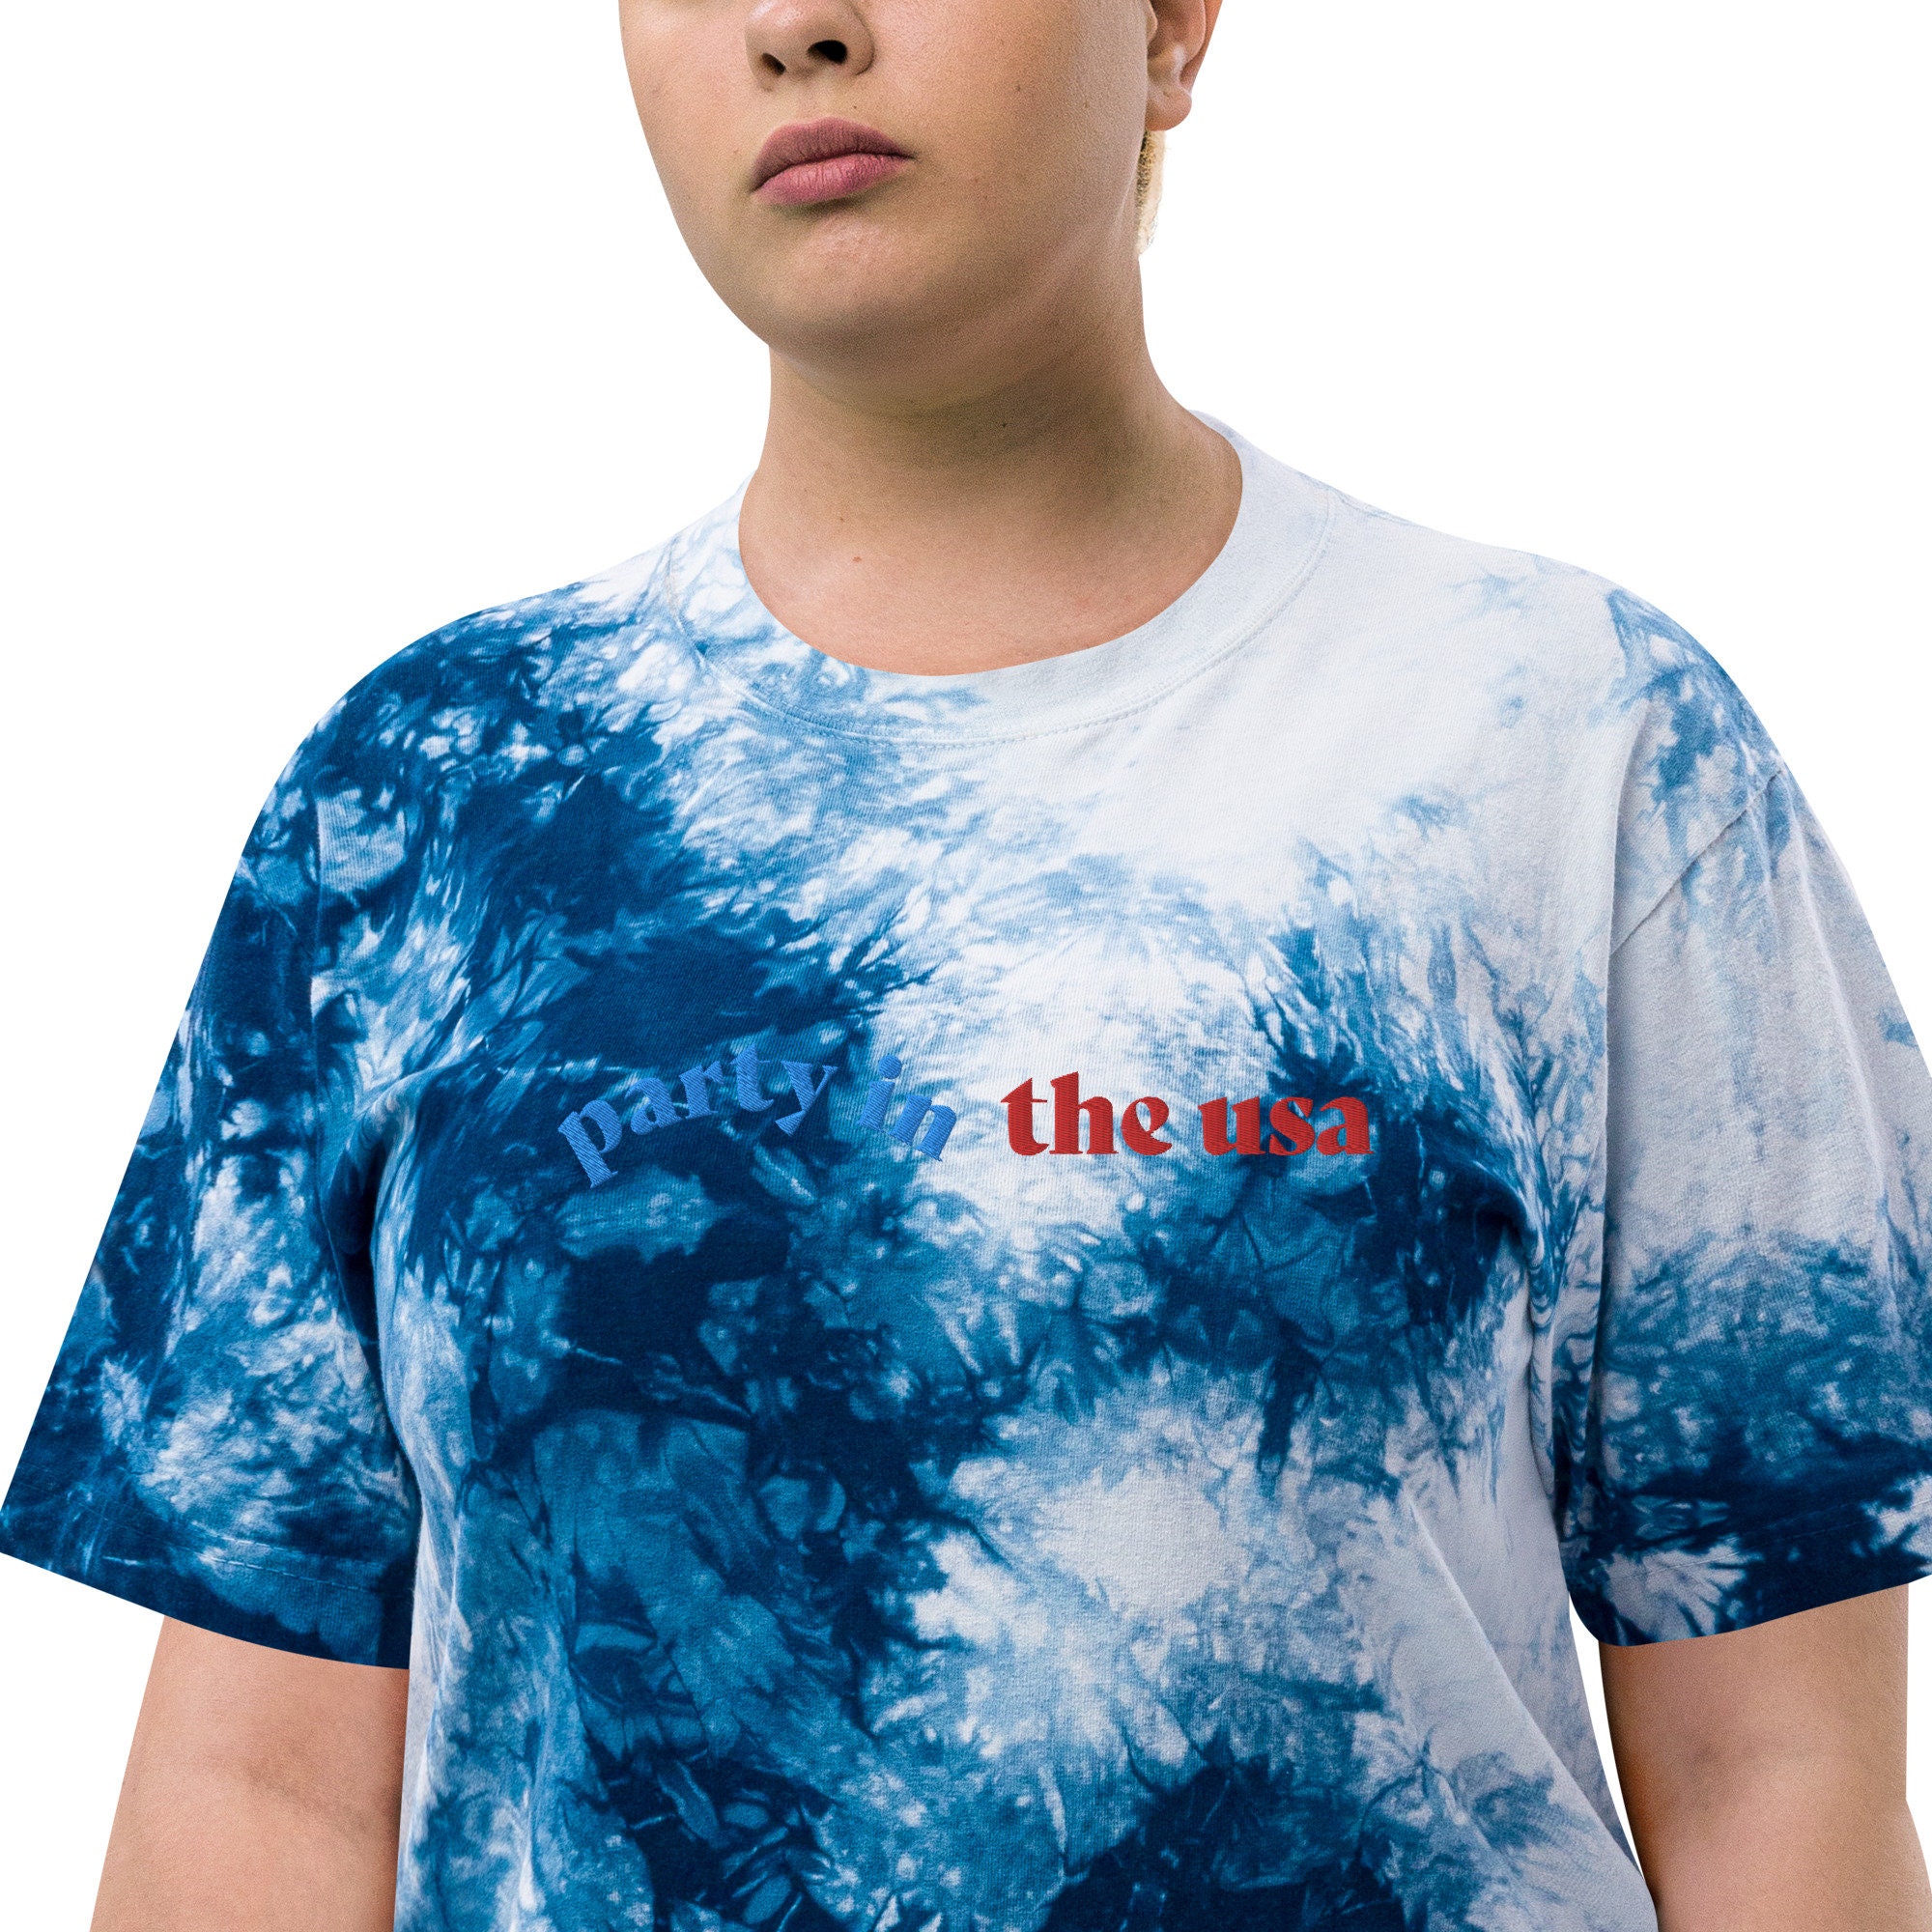 US- Oversized tie-dye t-shirt